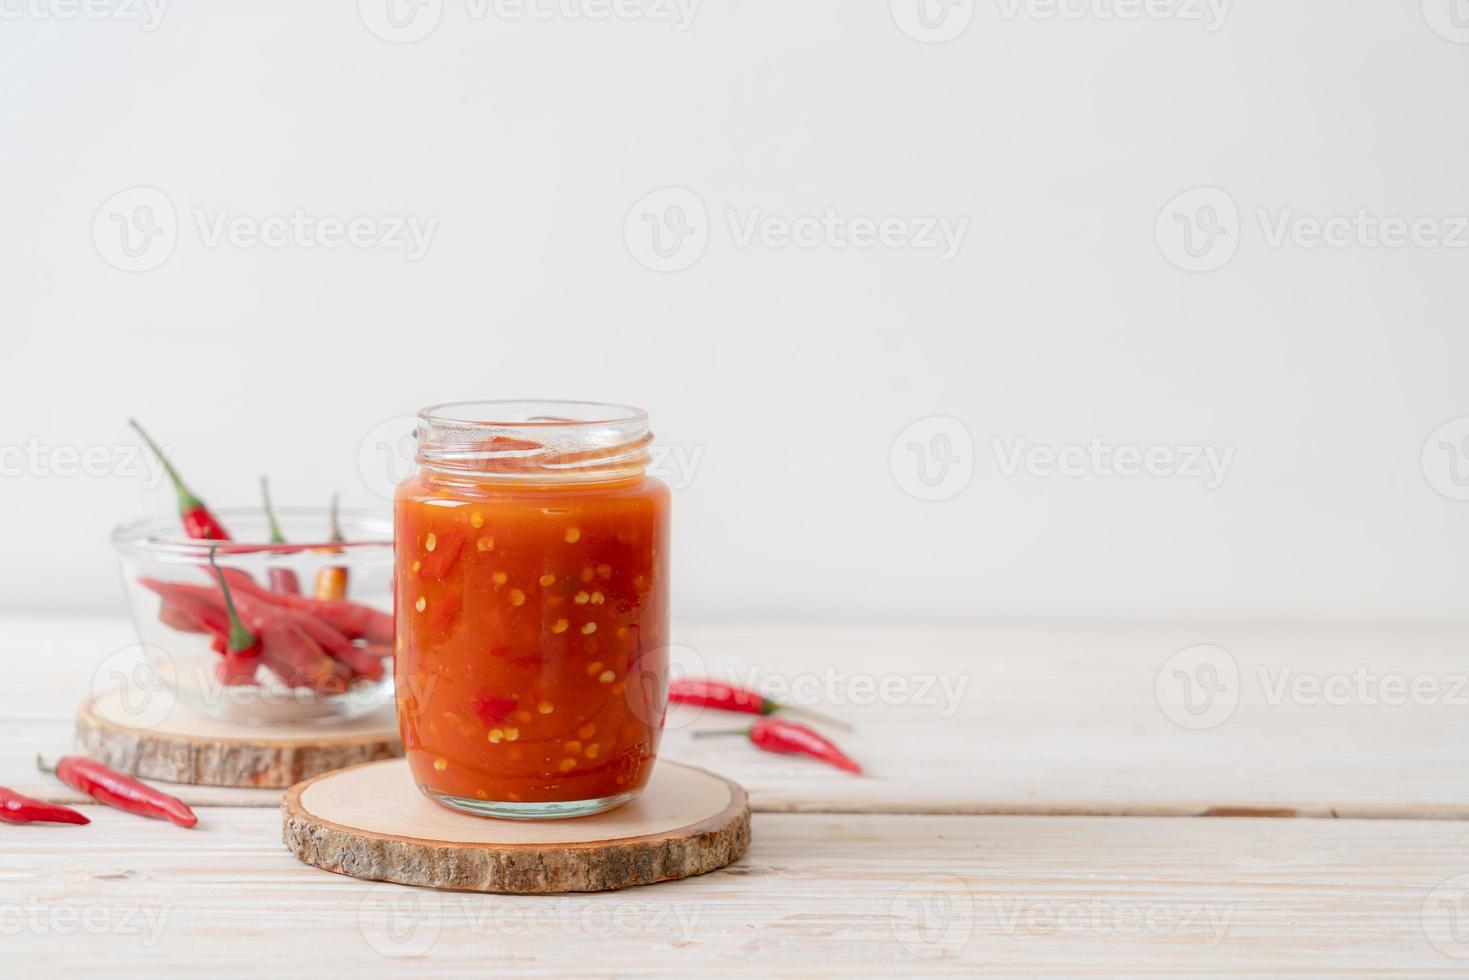 chili eller chilisås i flaska och burk på träbakgrund foto